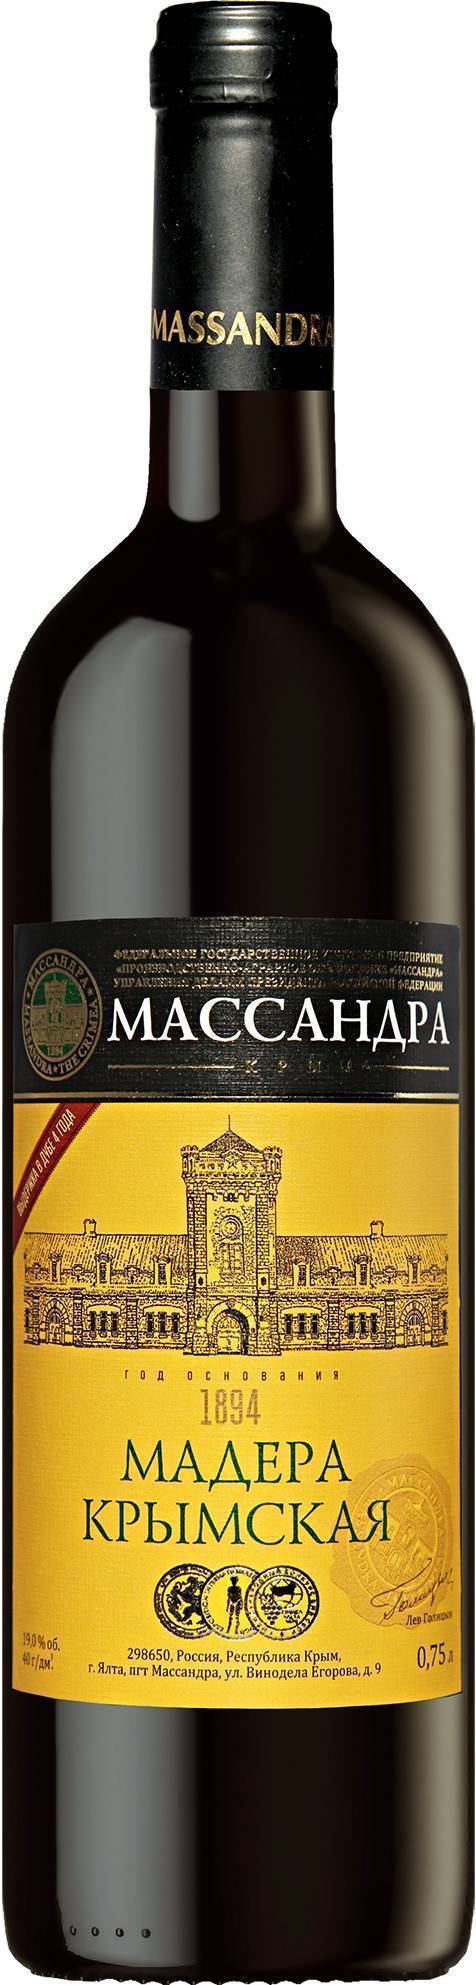 Португальское вино мадера( мадейра) его история появления, производство и как пить его